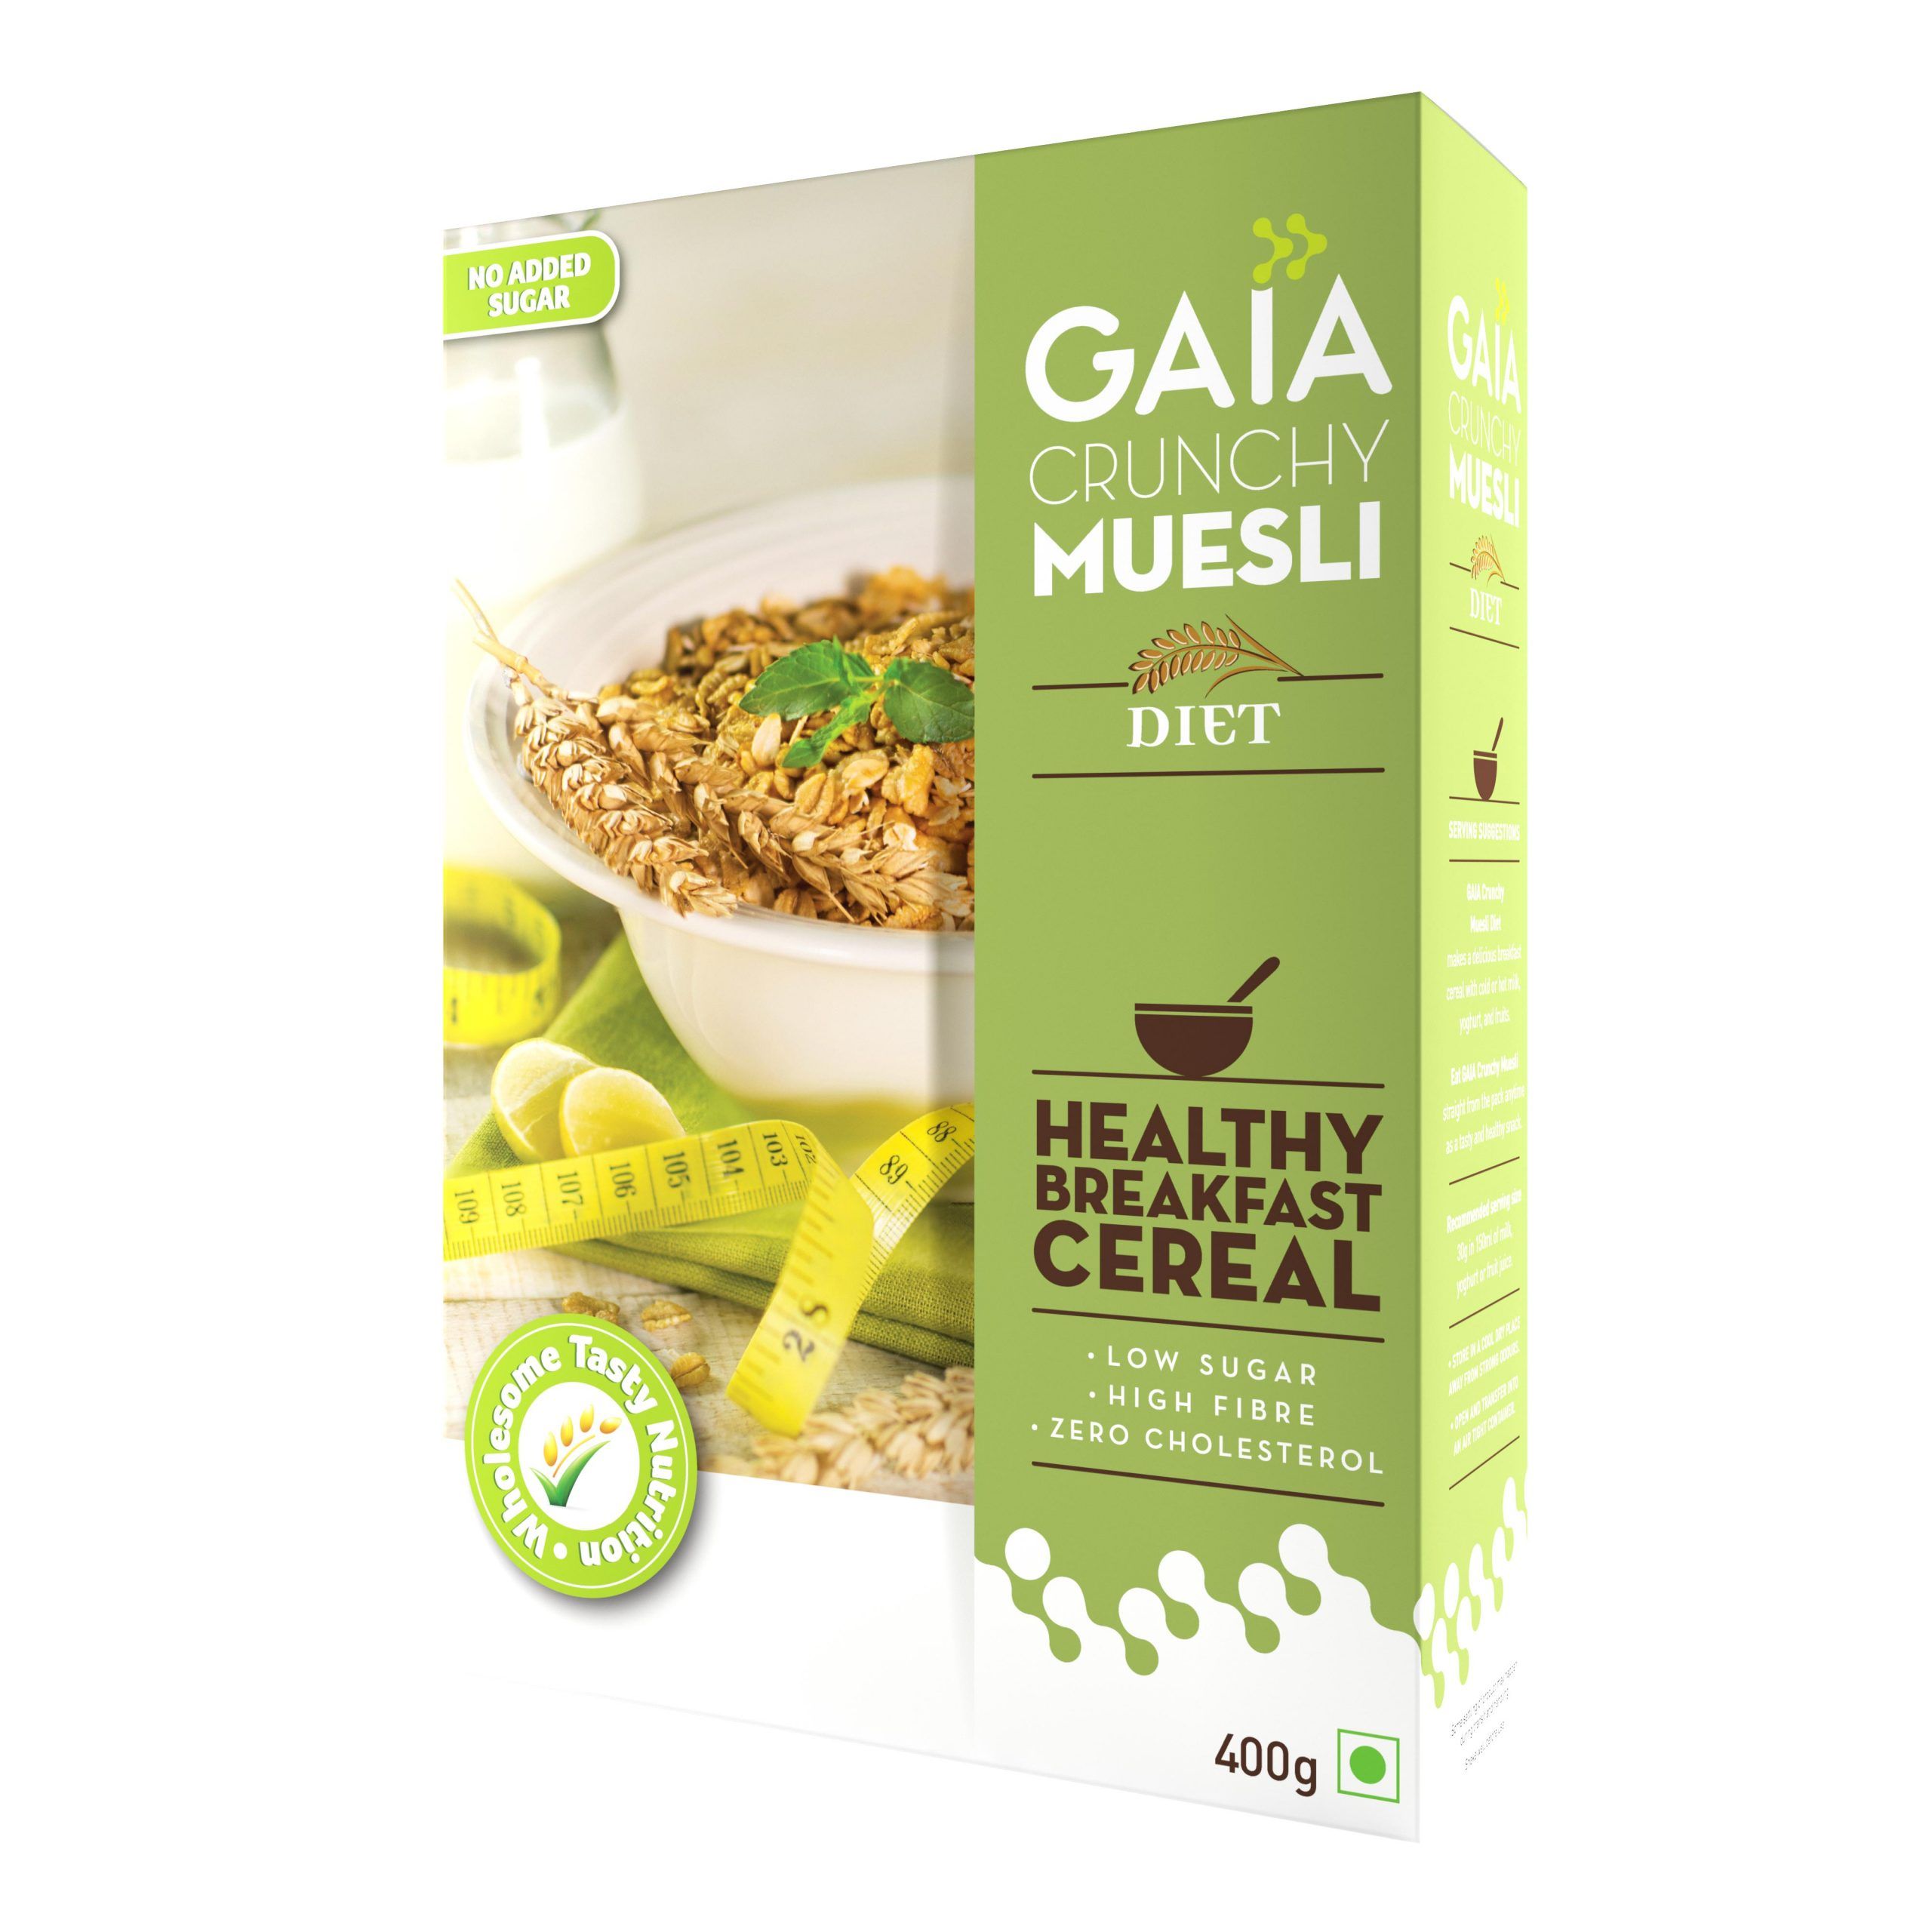 Gaia Crunchy Muesli – Diet Image